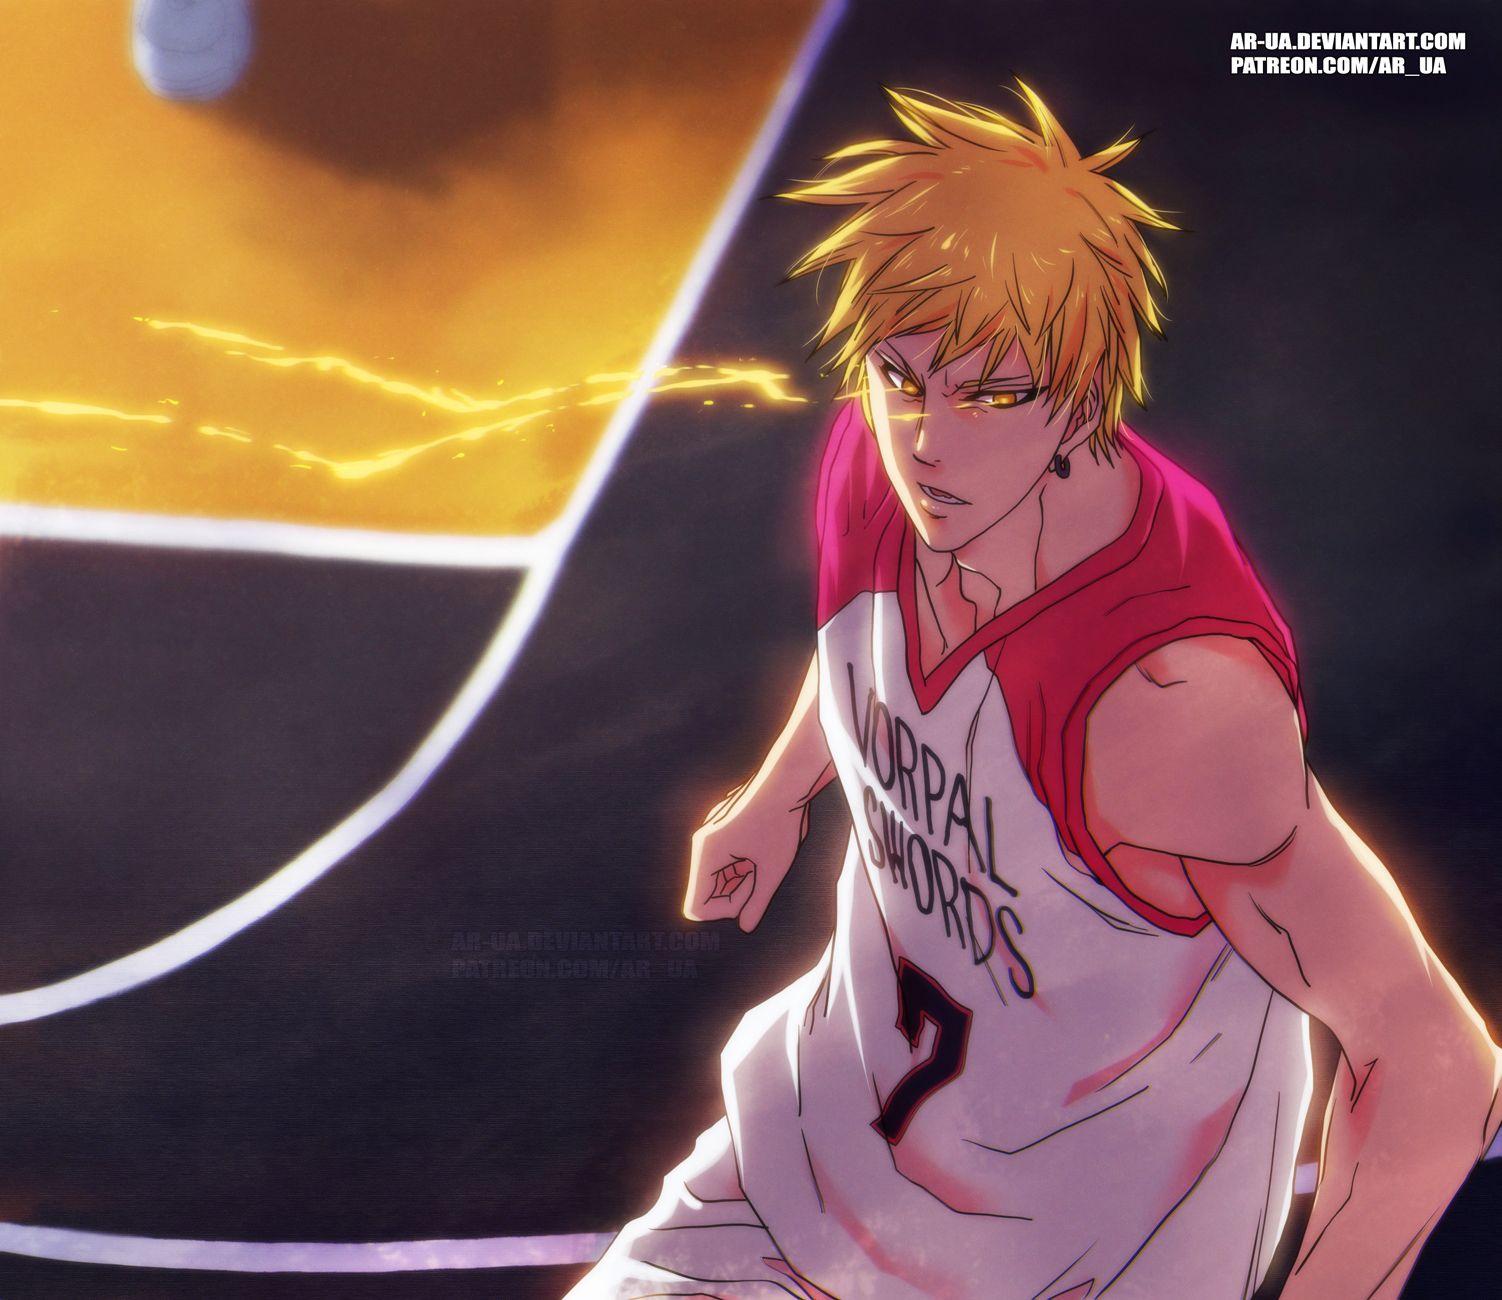 Basketball Uniform (Vorpal Swords). Anime